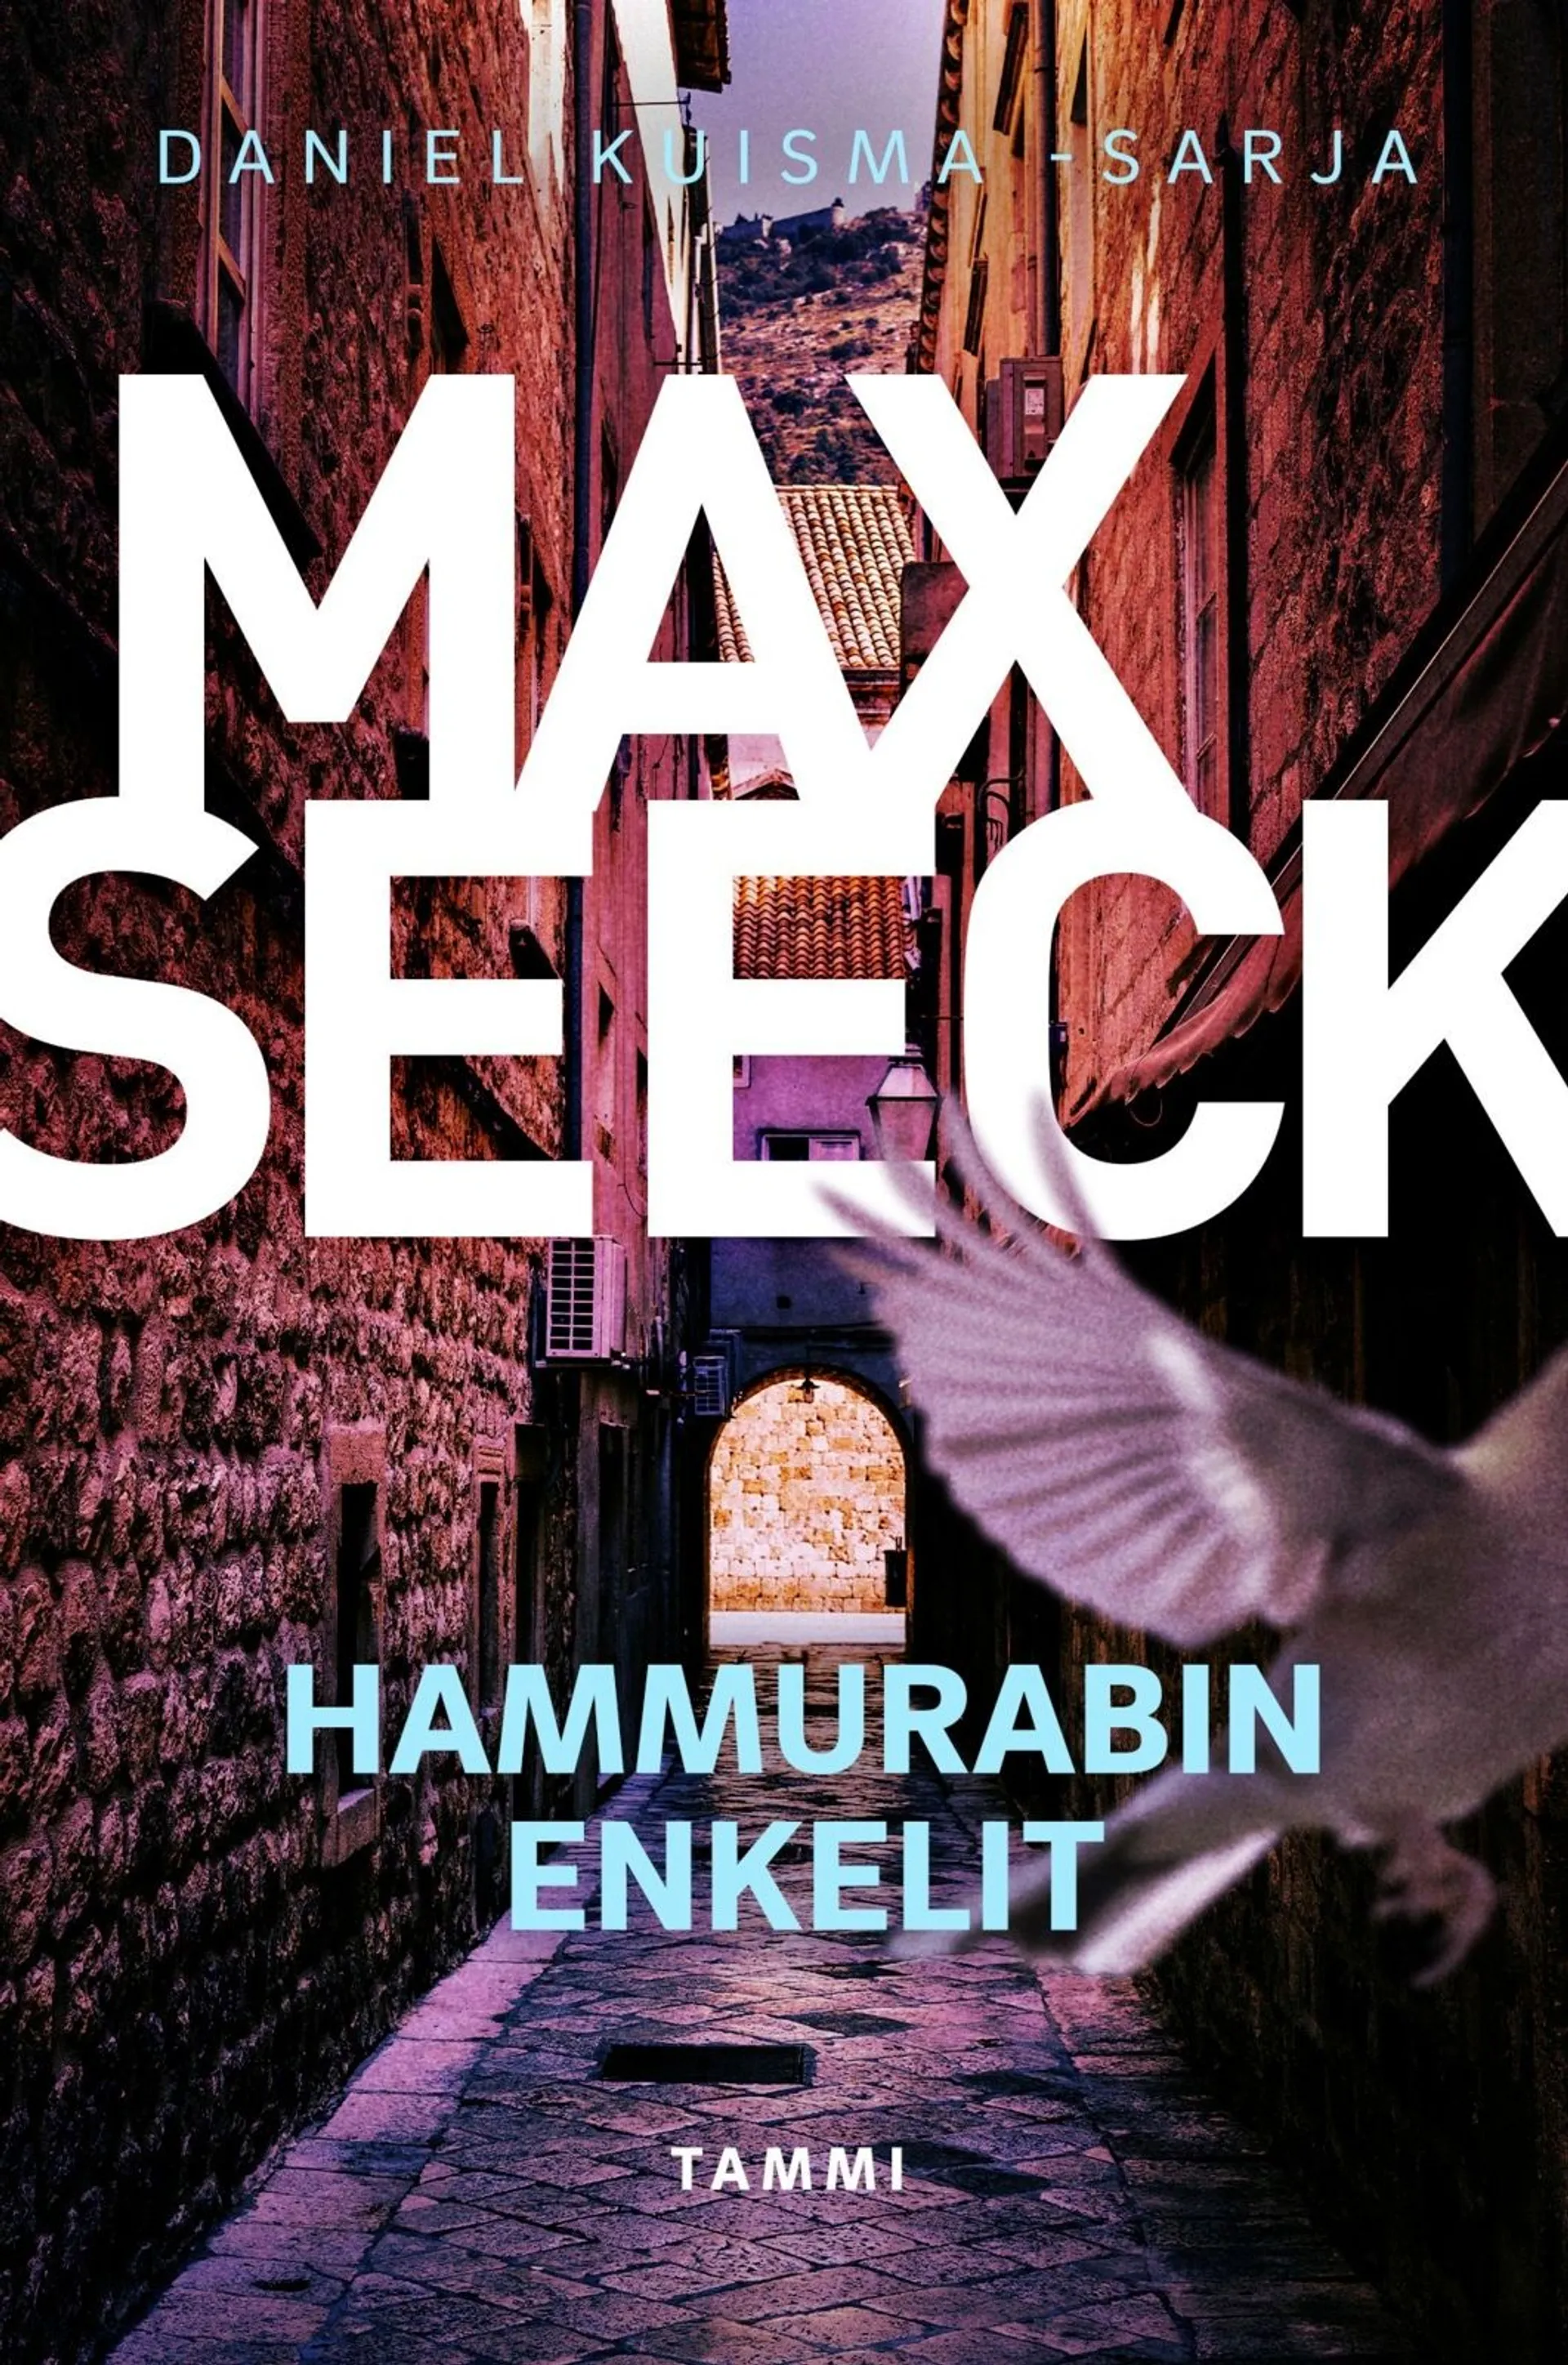 Seeck, Hammurabin enkelit